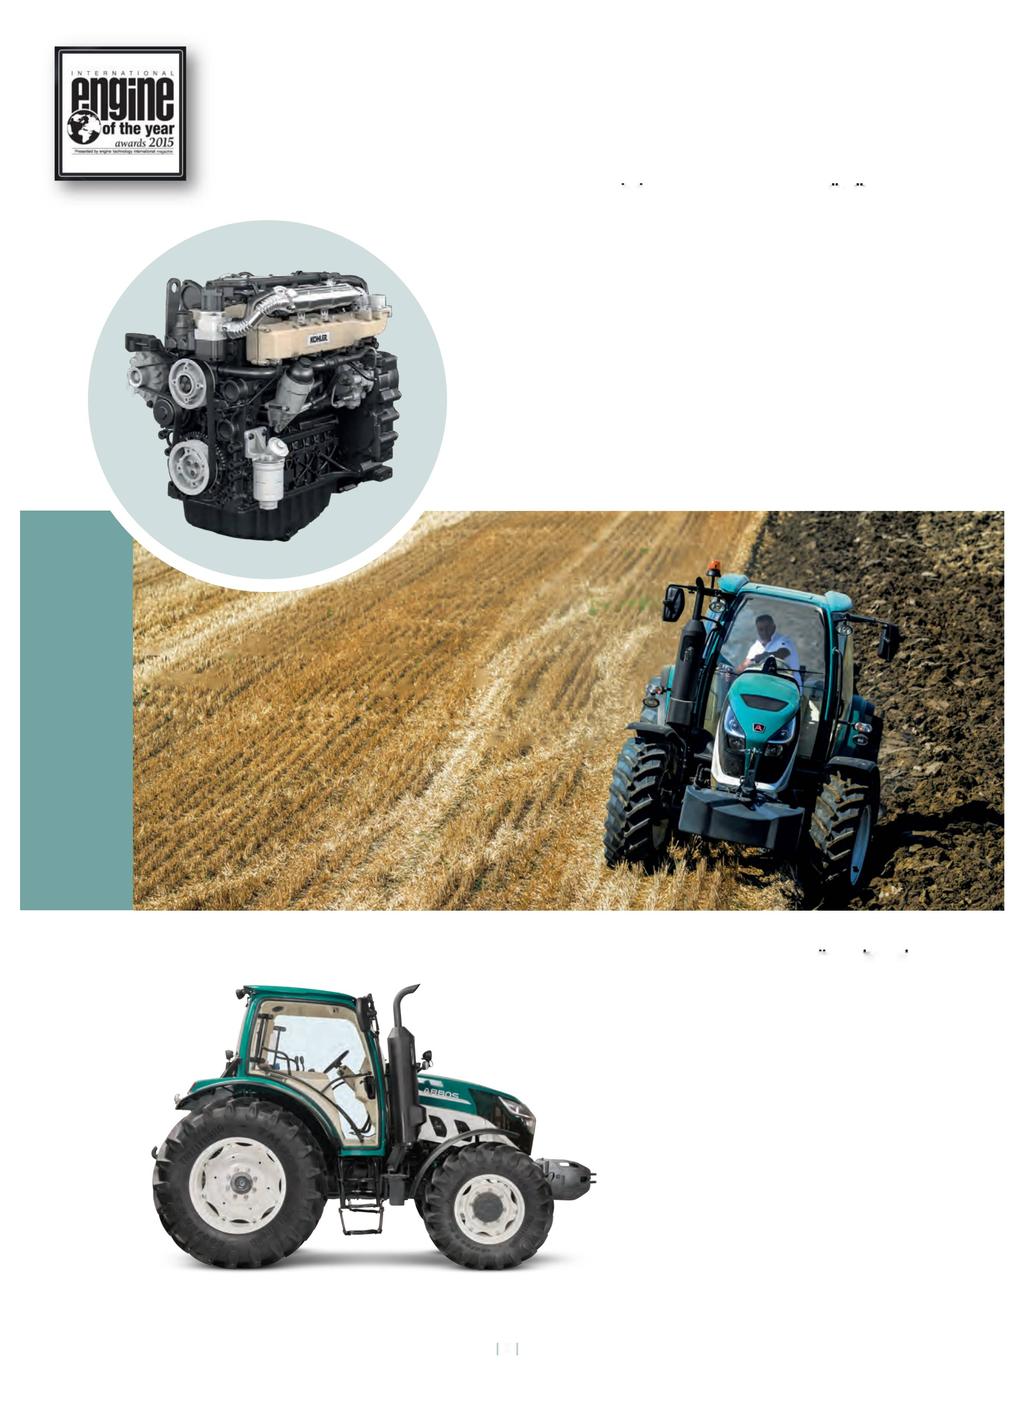 2015 Yılın EN İYİ DİZEL MOTORU ÖDULU 5000 serisi traktörlerde ; Yenilikçi, Verimi, Yakıt tasarrufu sağlayan ödüllü Kohler 3404 TCR SCR Euro4 motor bulunmaktadır.